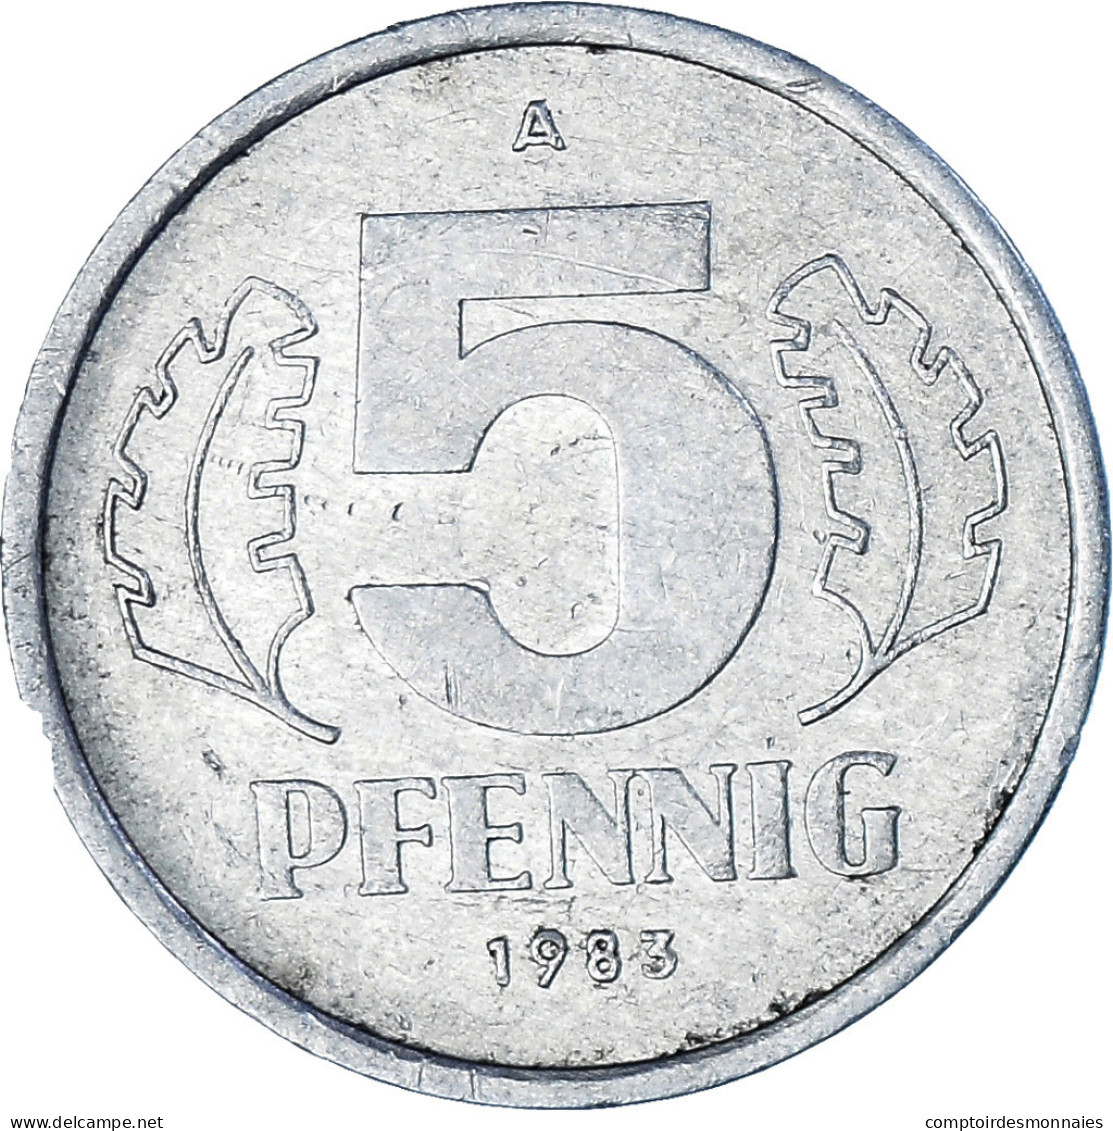 Monnaie, République Démocratique Allemande, 5 Pfennig, 1983, Berlin, TTB - 5 Pfennig